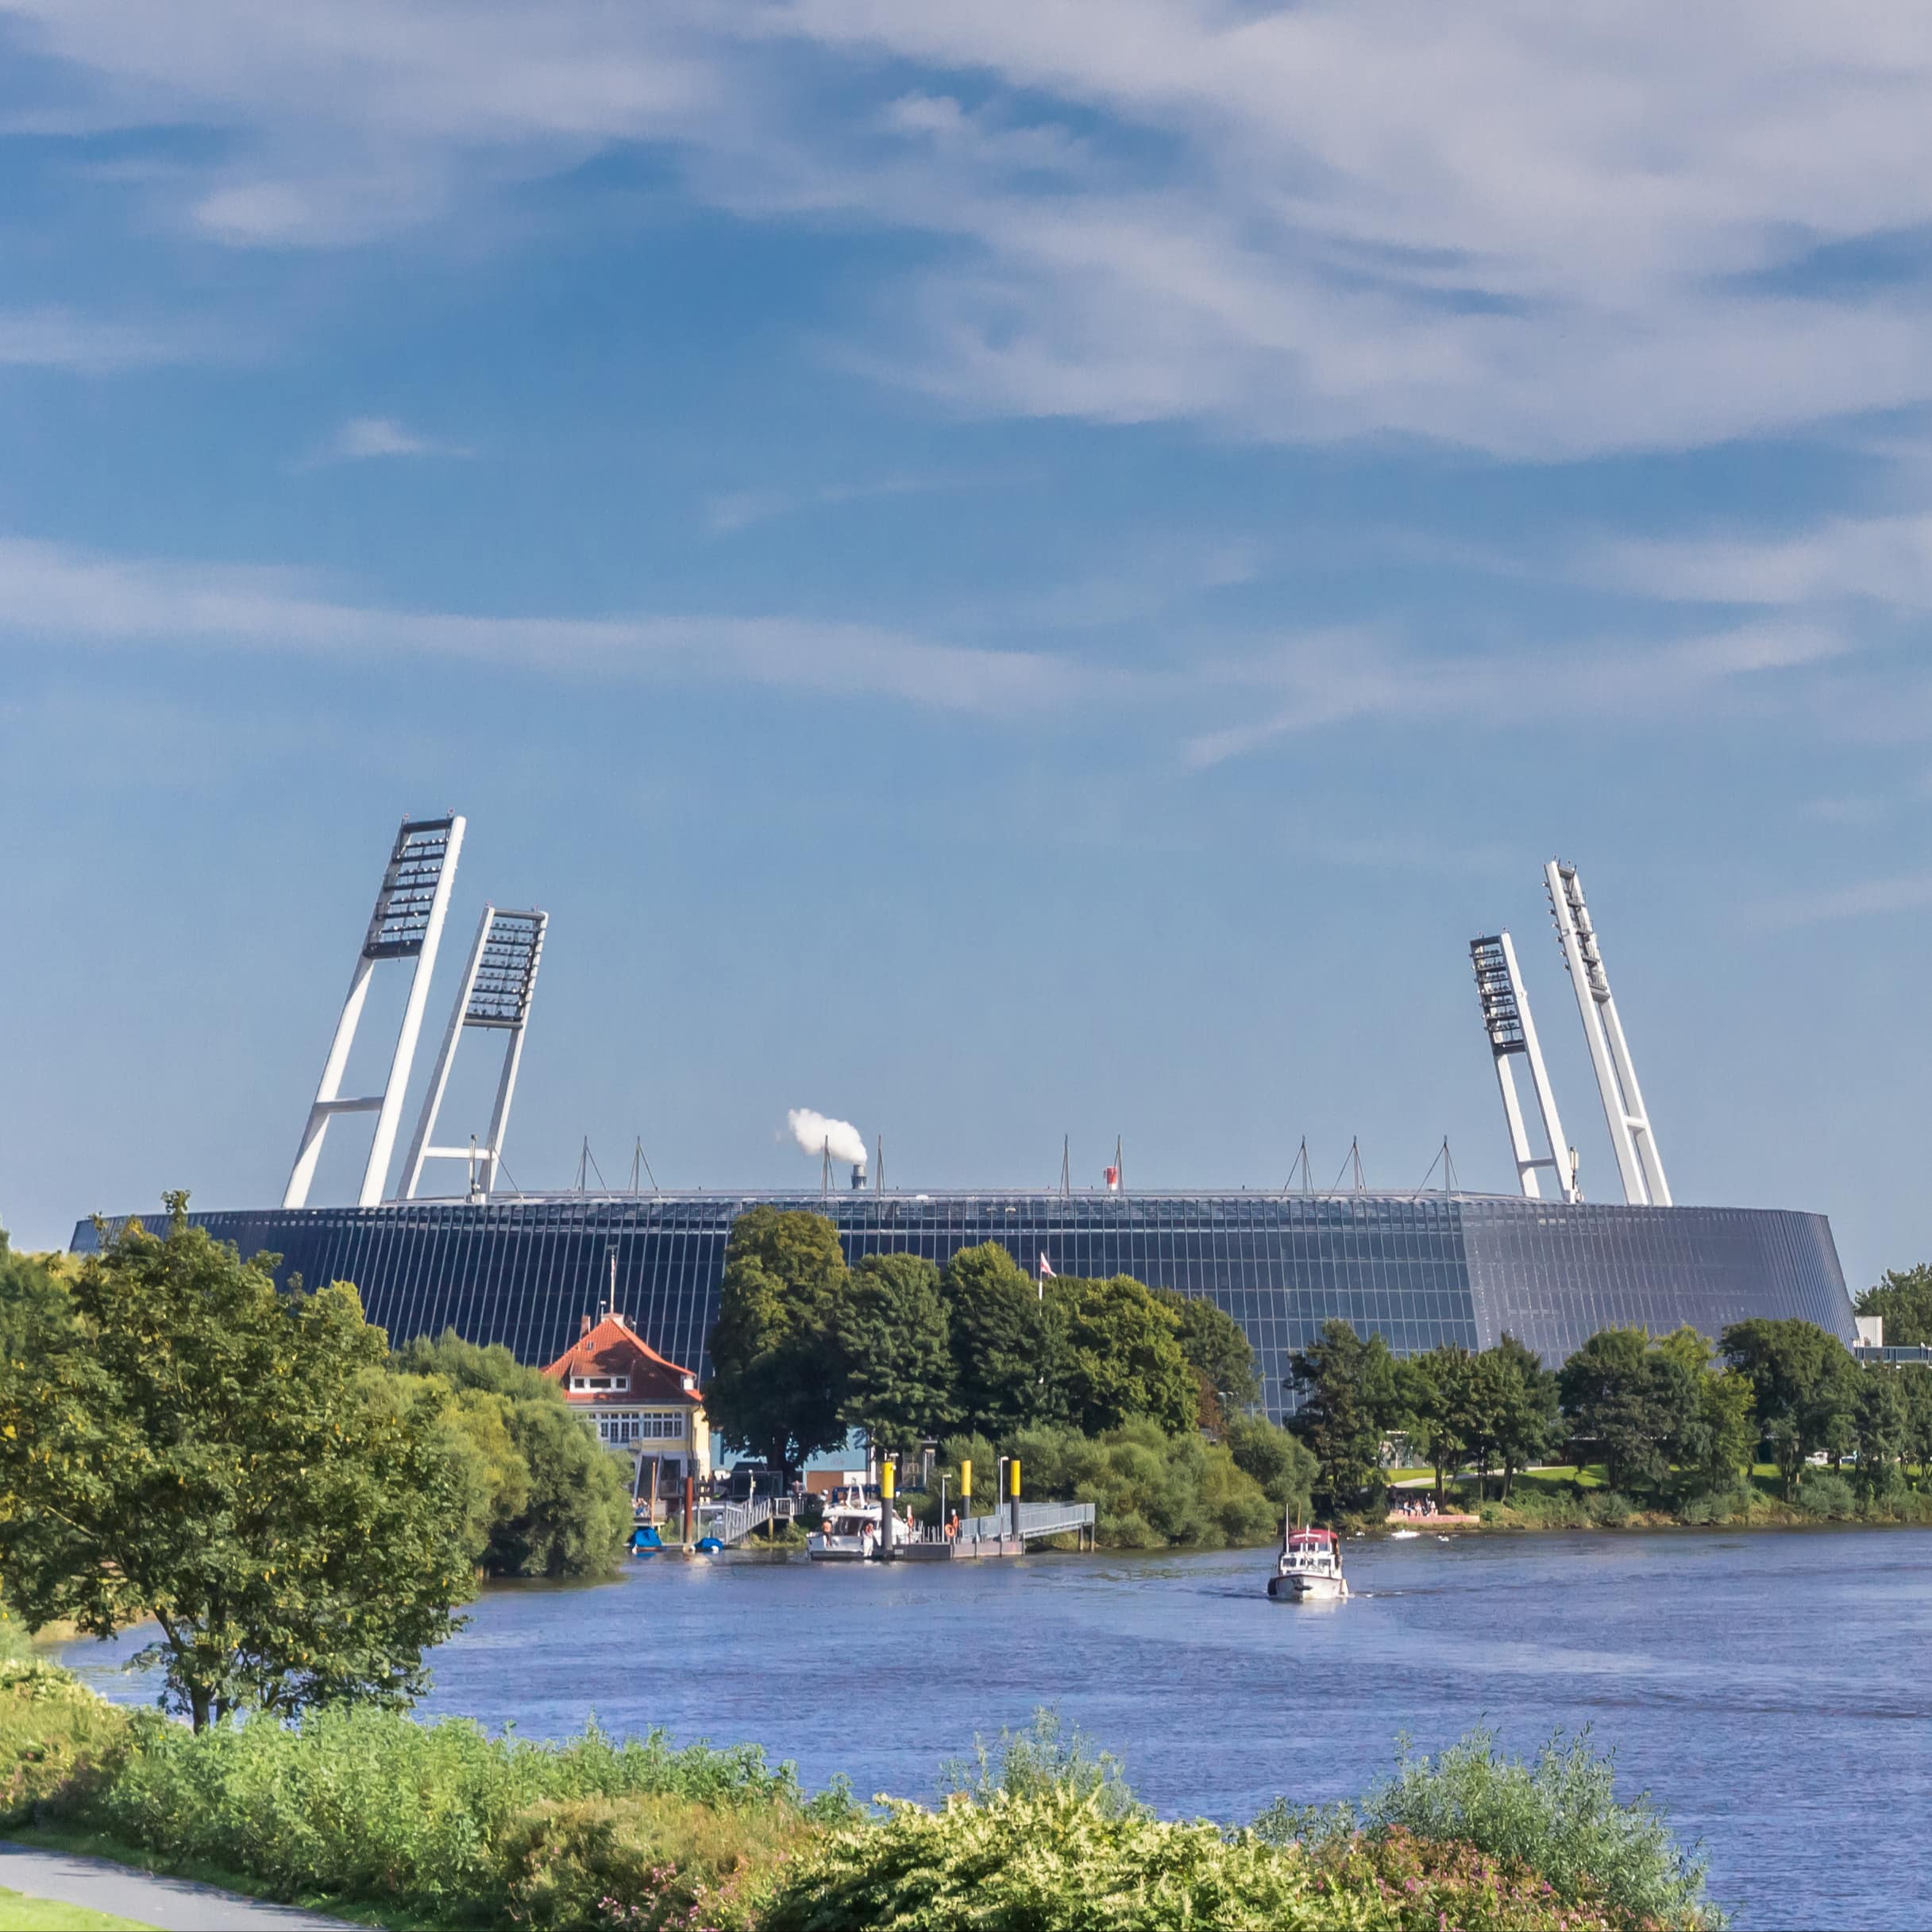 Panoramablick über die Weser und das Stadium. Auf dem Wasser schippern Boote.